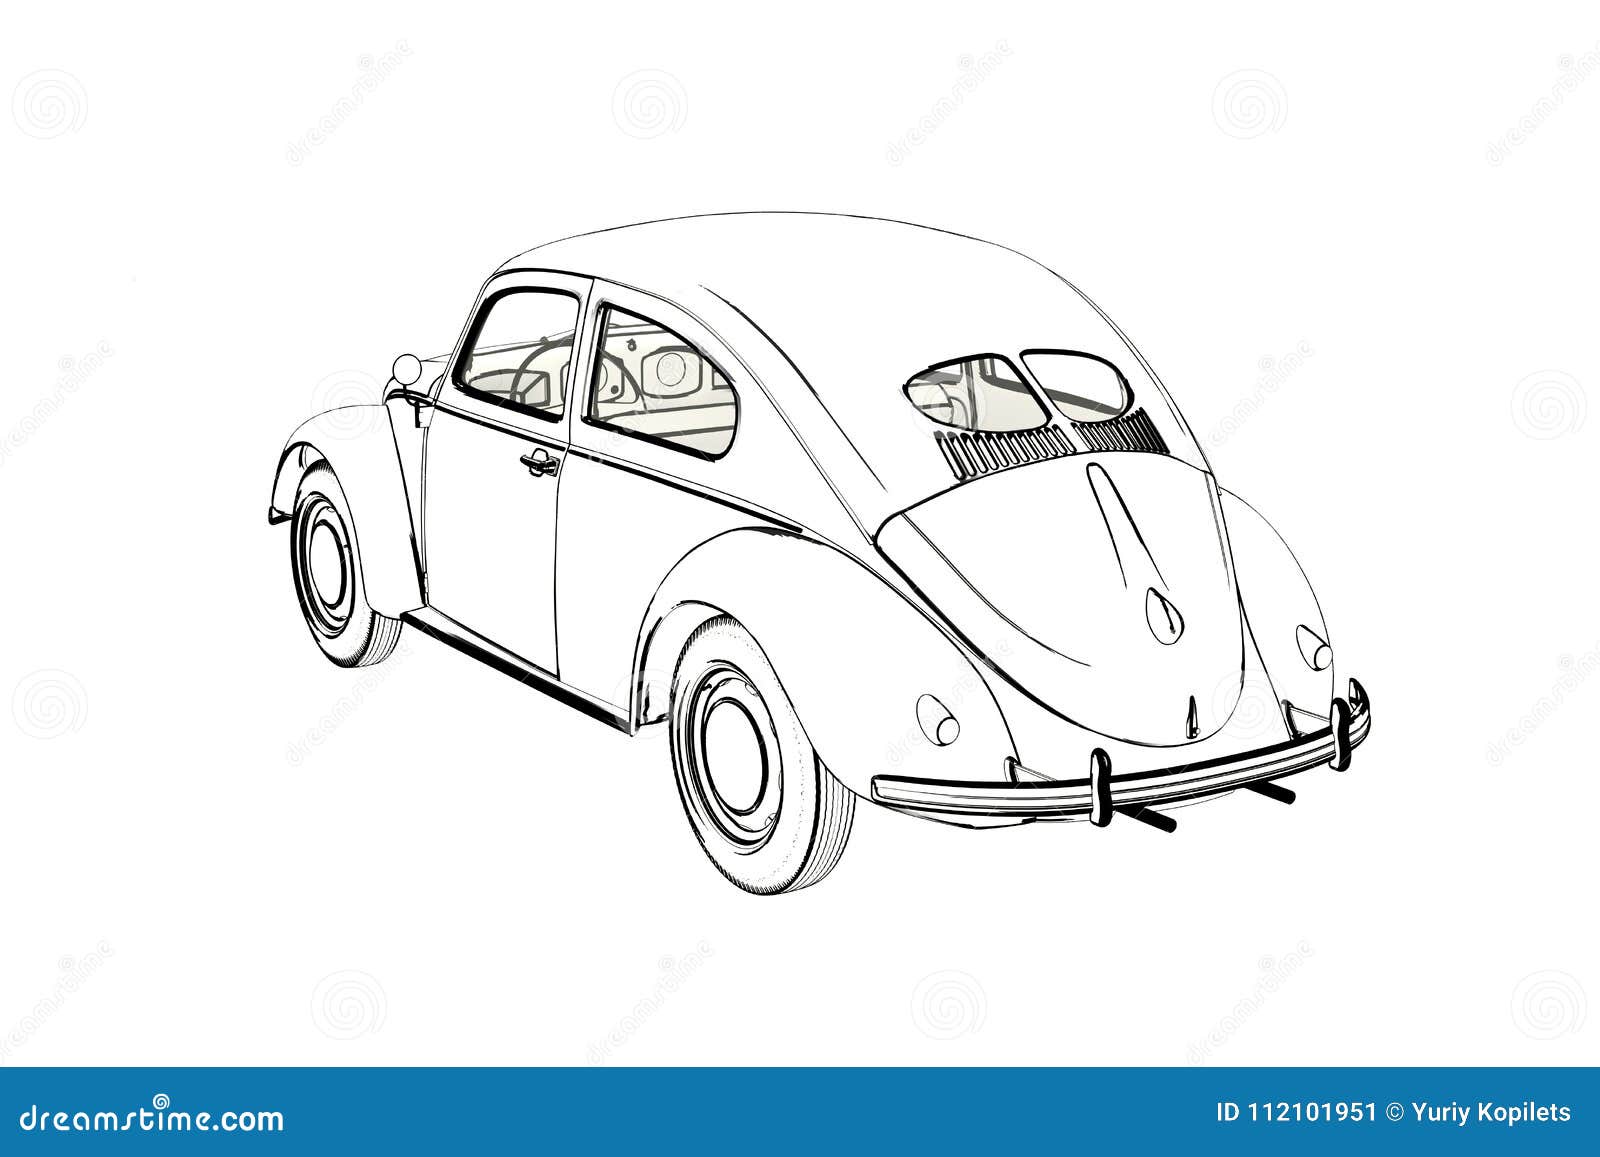 Volkswagen Beetle sketch HD wallpaper  Wallpaper Flare